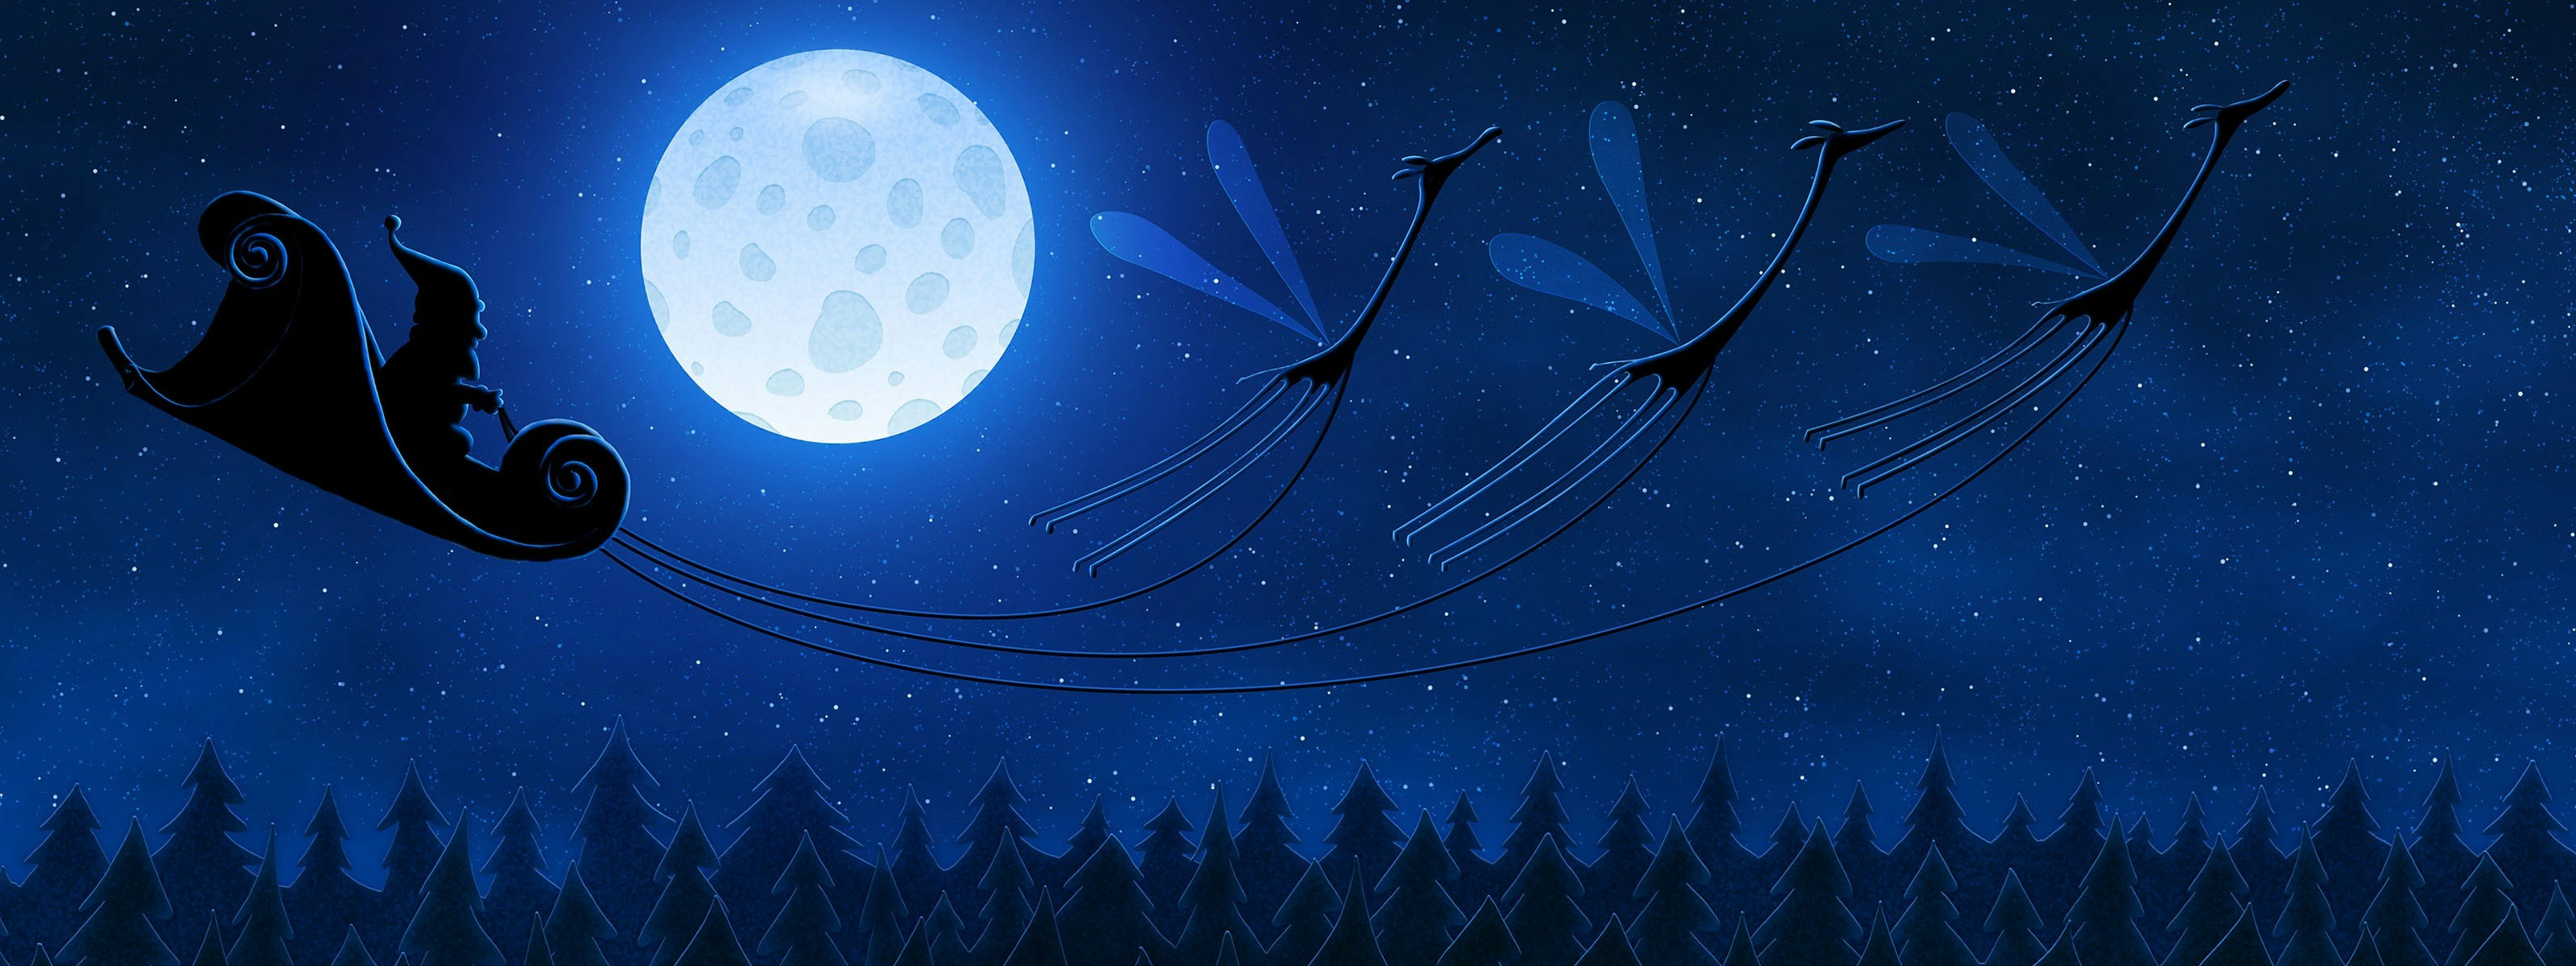 3d обои Санта Клаус несётся над ёлочками в звёздном небе на санях, в которые запряжены крылатые олени  для двух мониторов # 34287